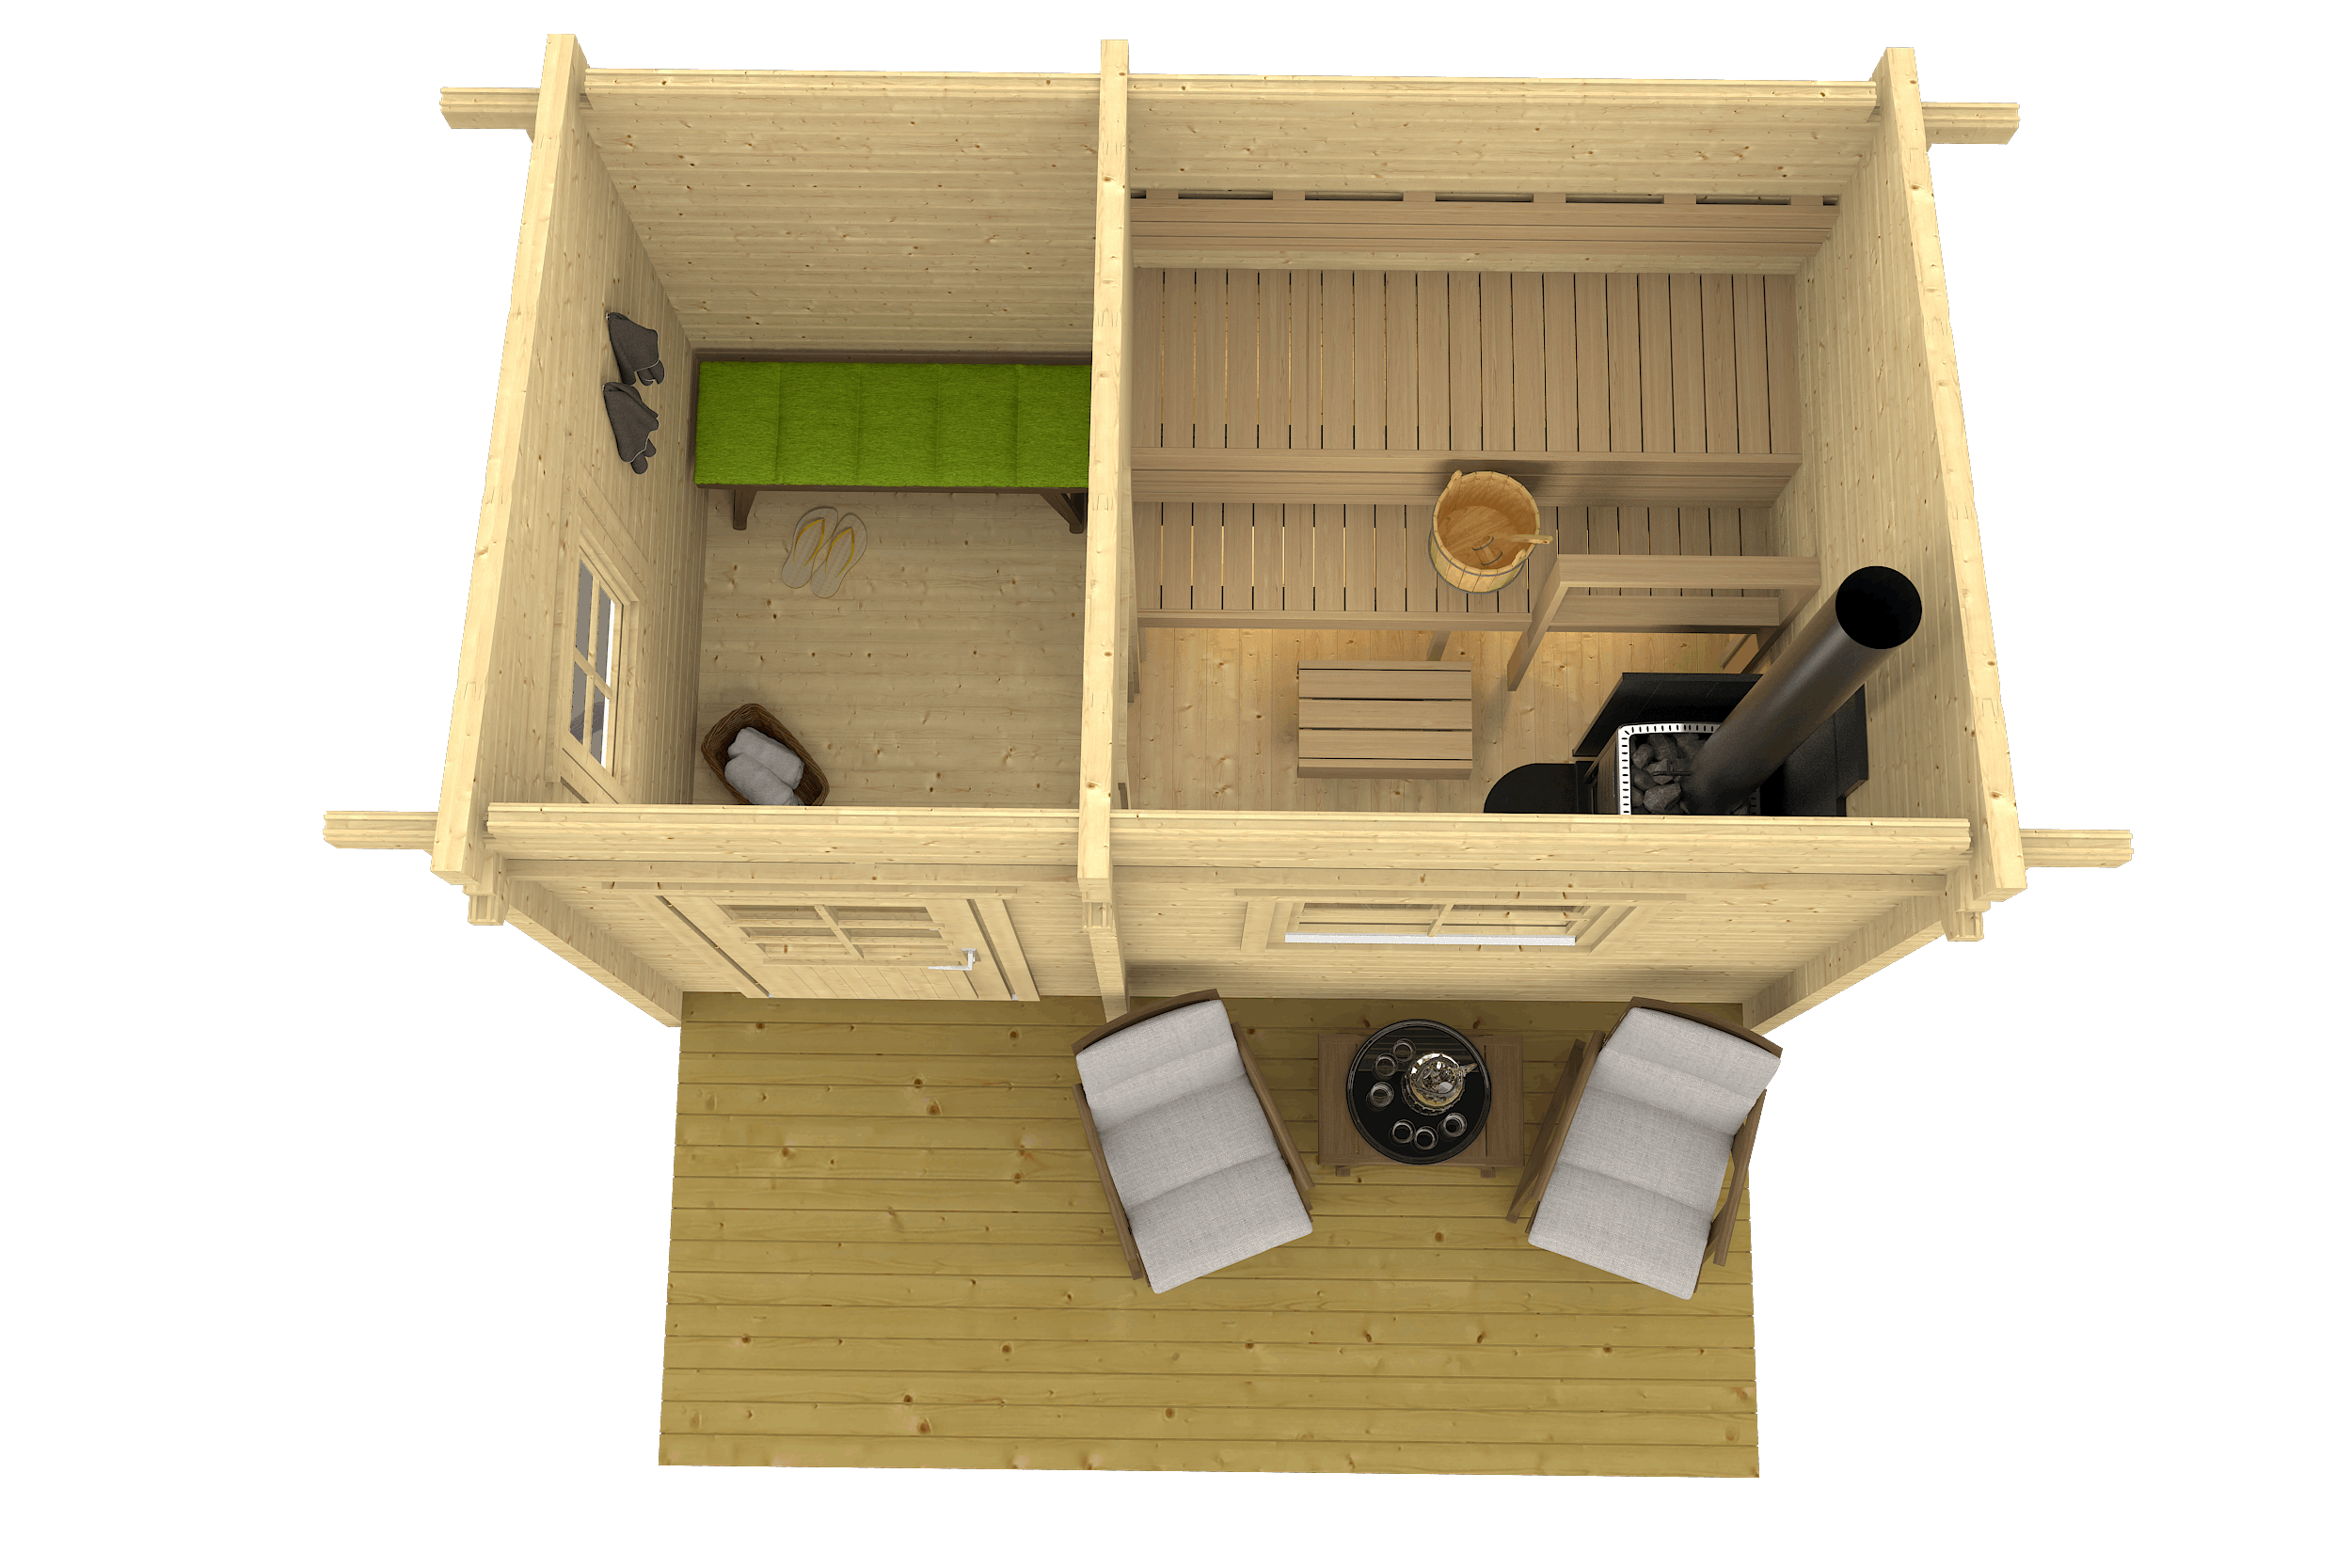 MODERNI PIHASAUNA 12 3.8x2.4m Sauna Log Cabin Plan